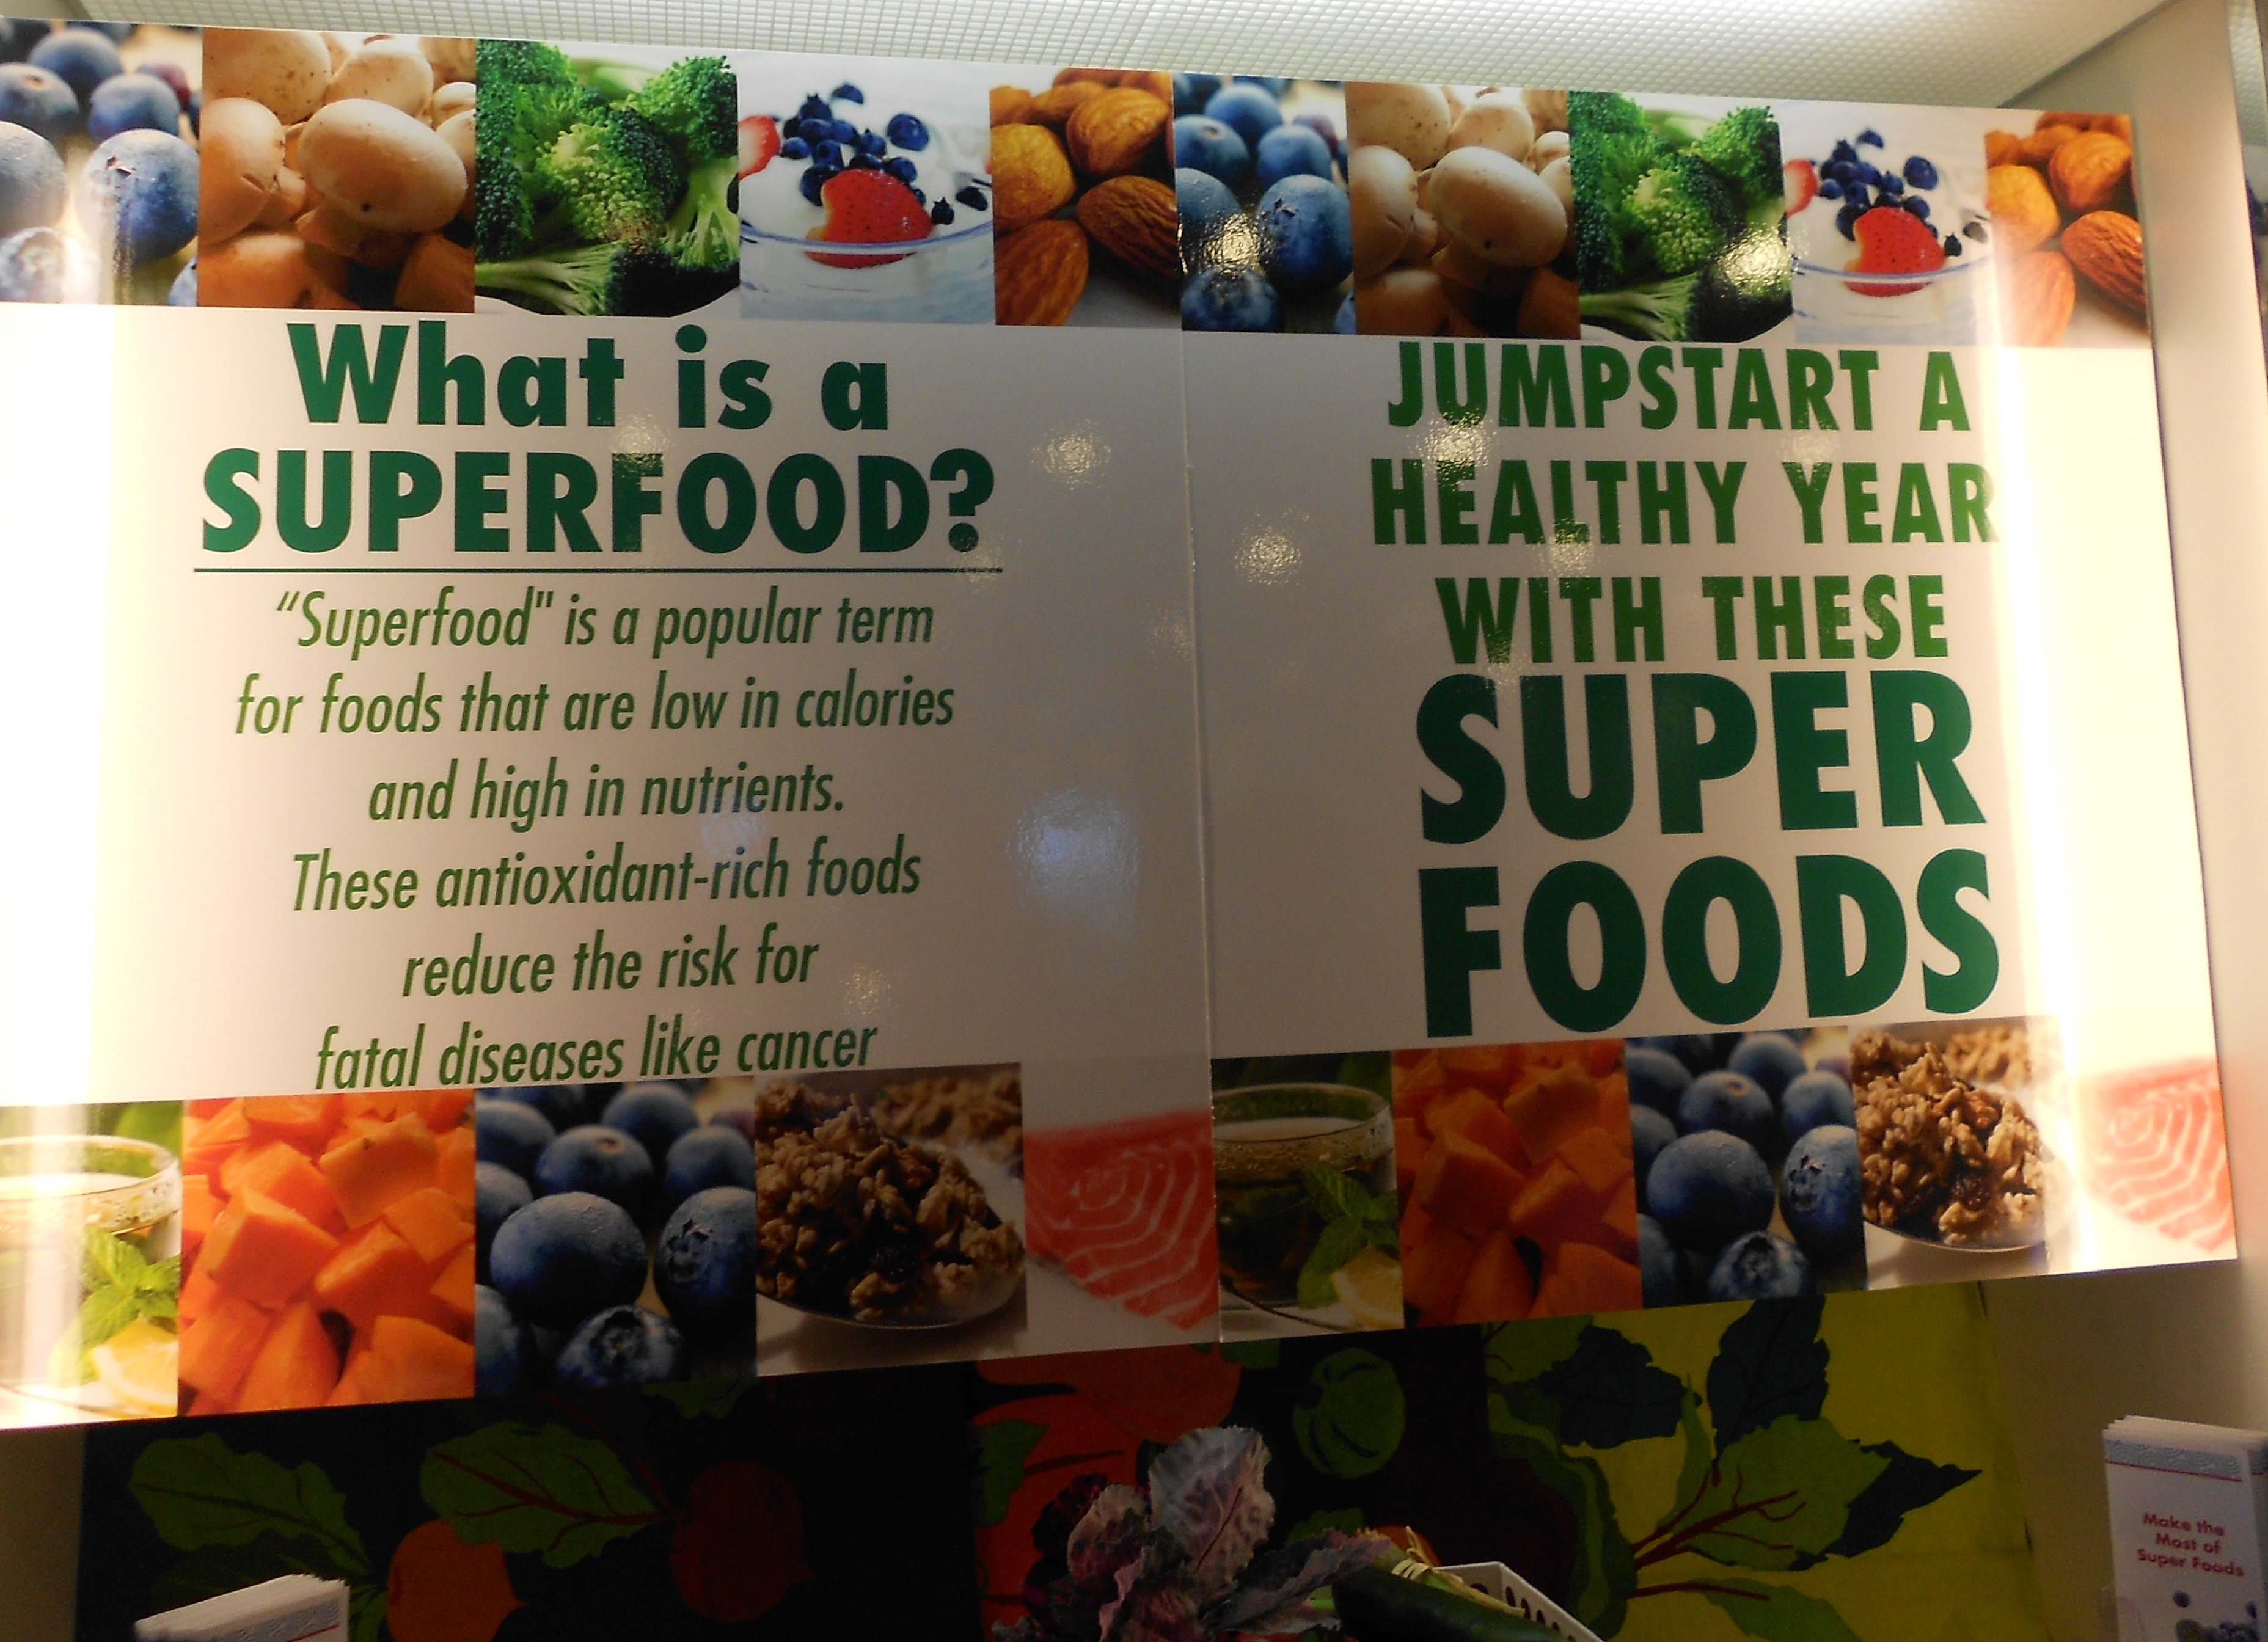 Superfoods - zabieg marketingowy czy potrzeba dla zdrowia? - BEmpire